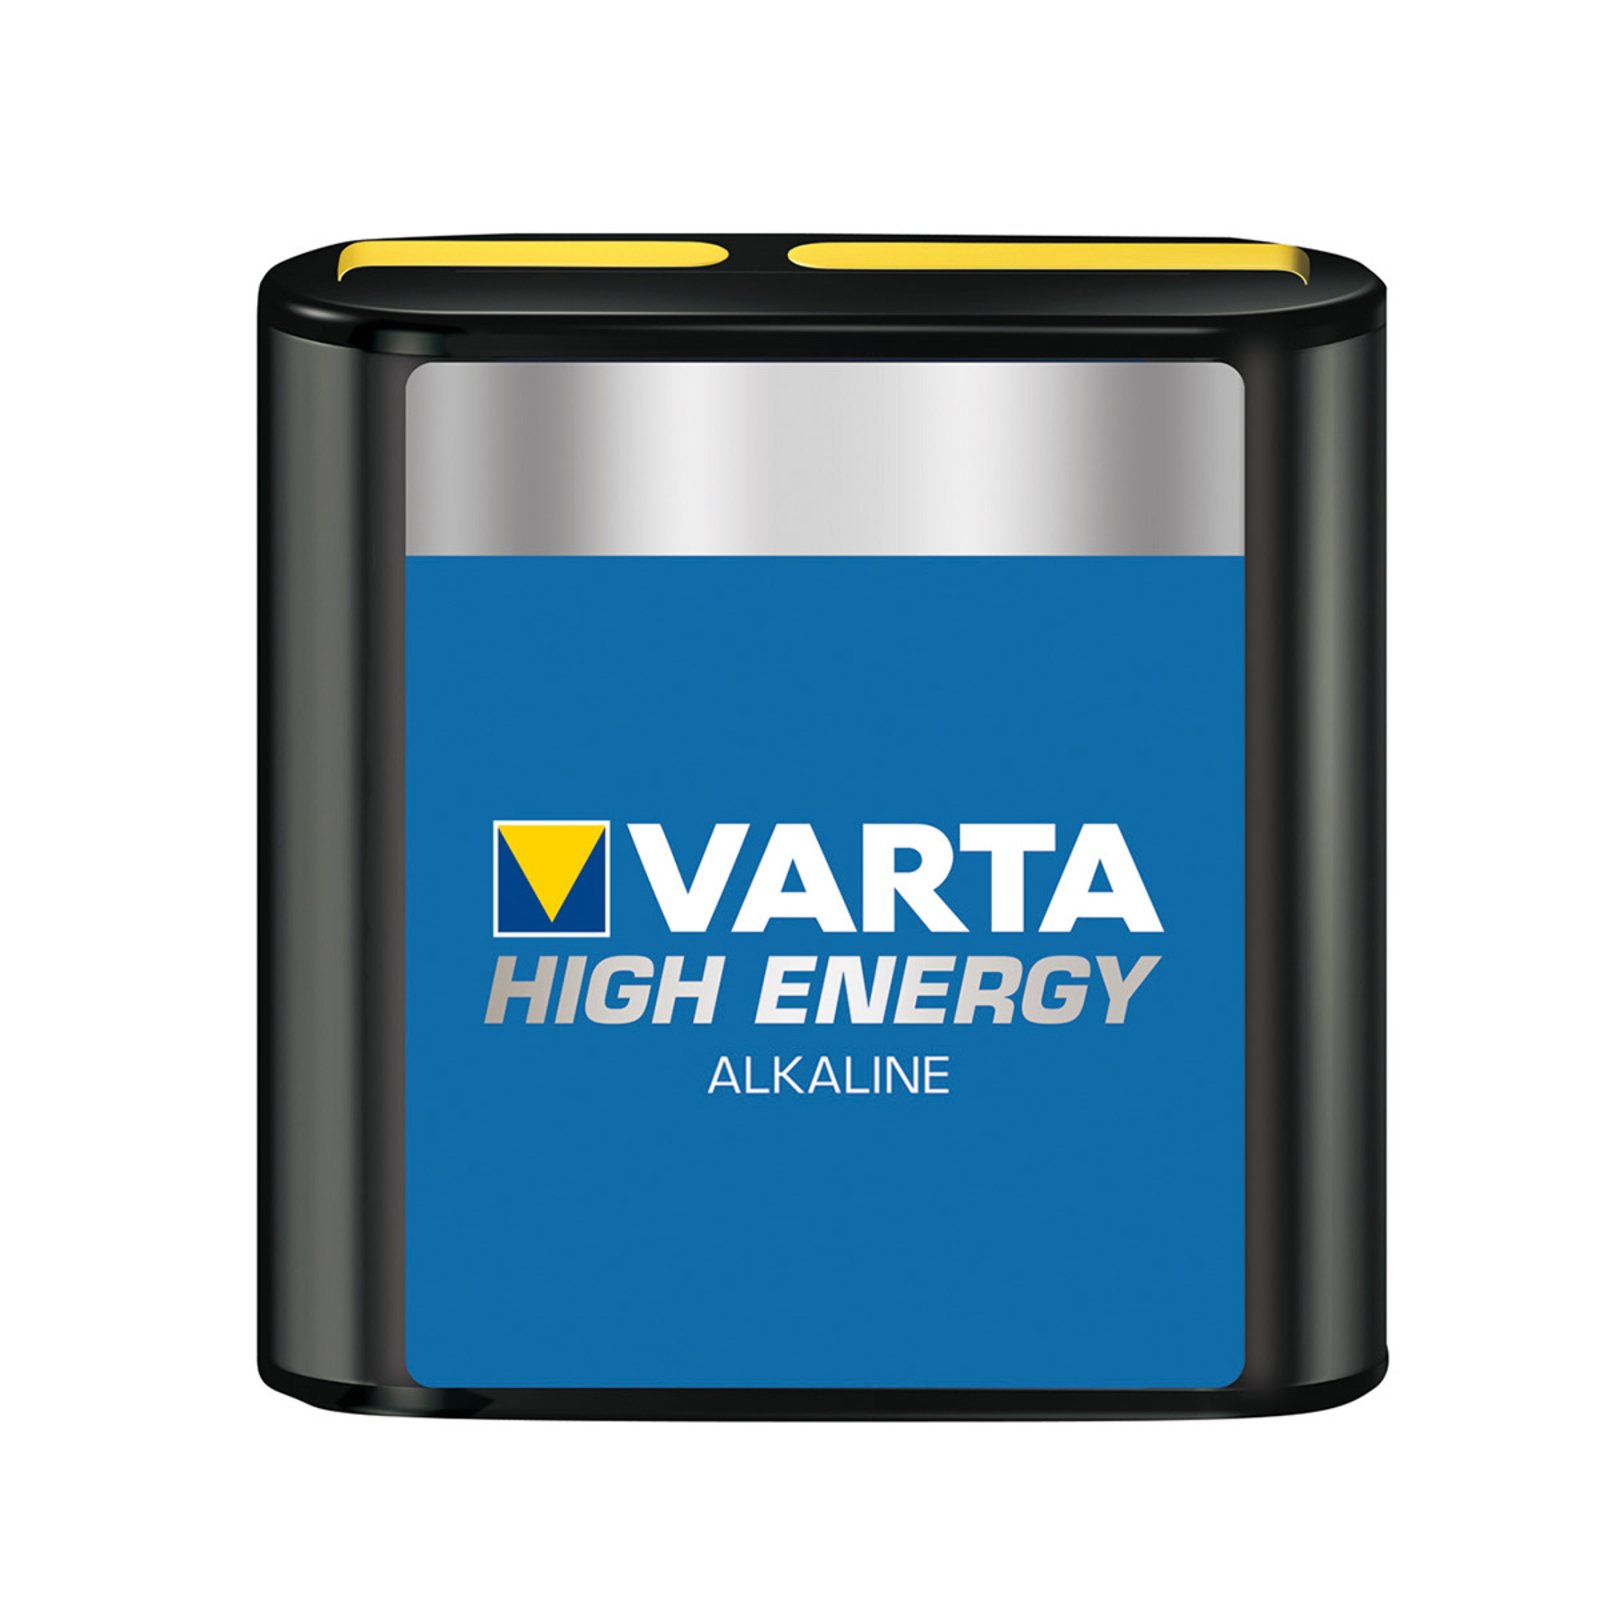 High Energy 4,5V batterij voor platte lampen